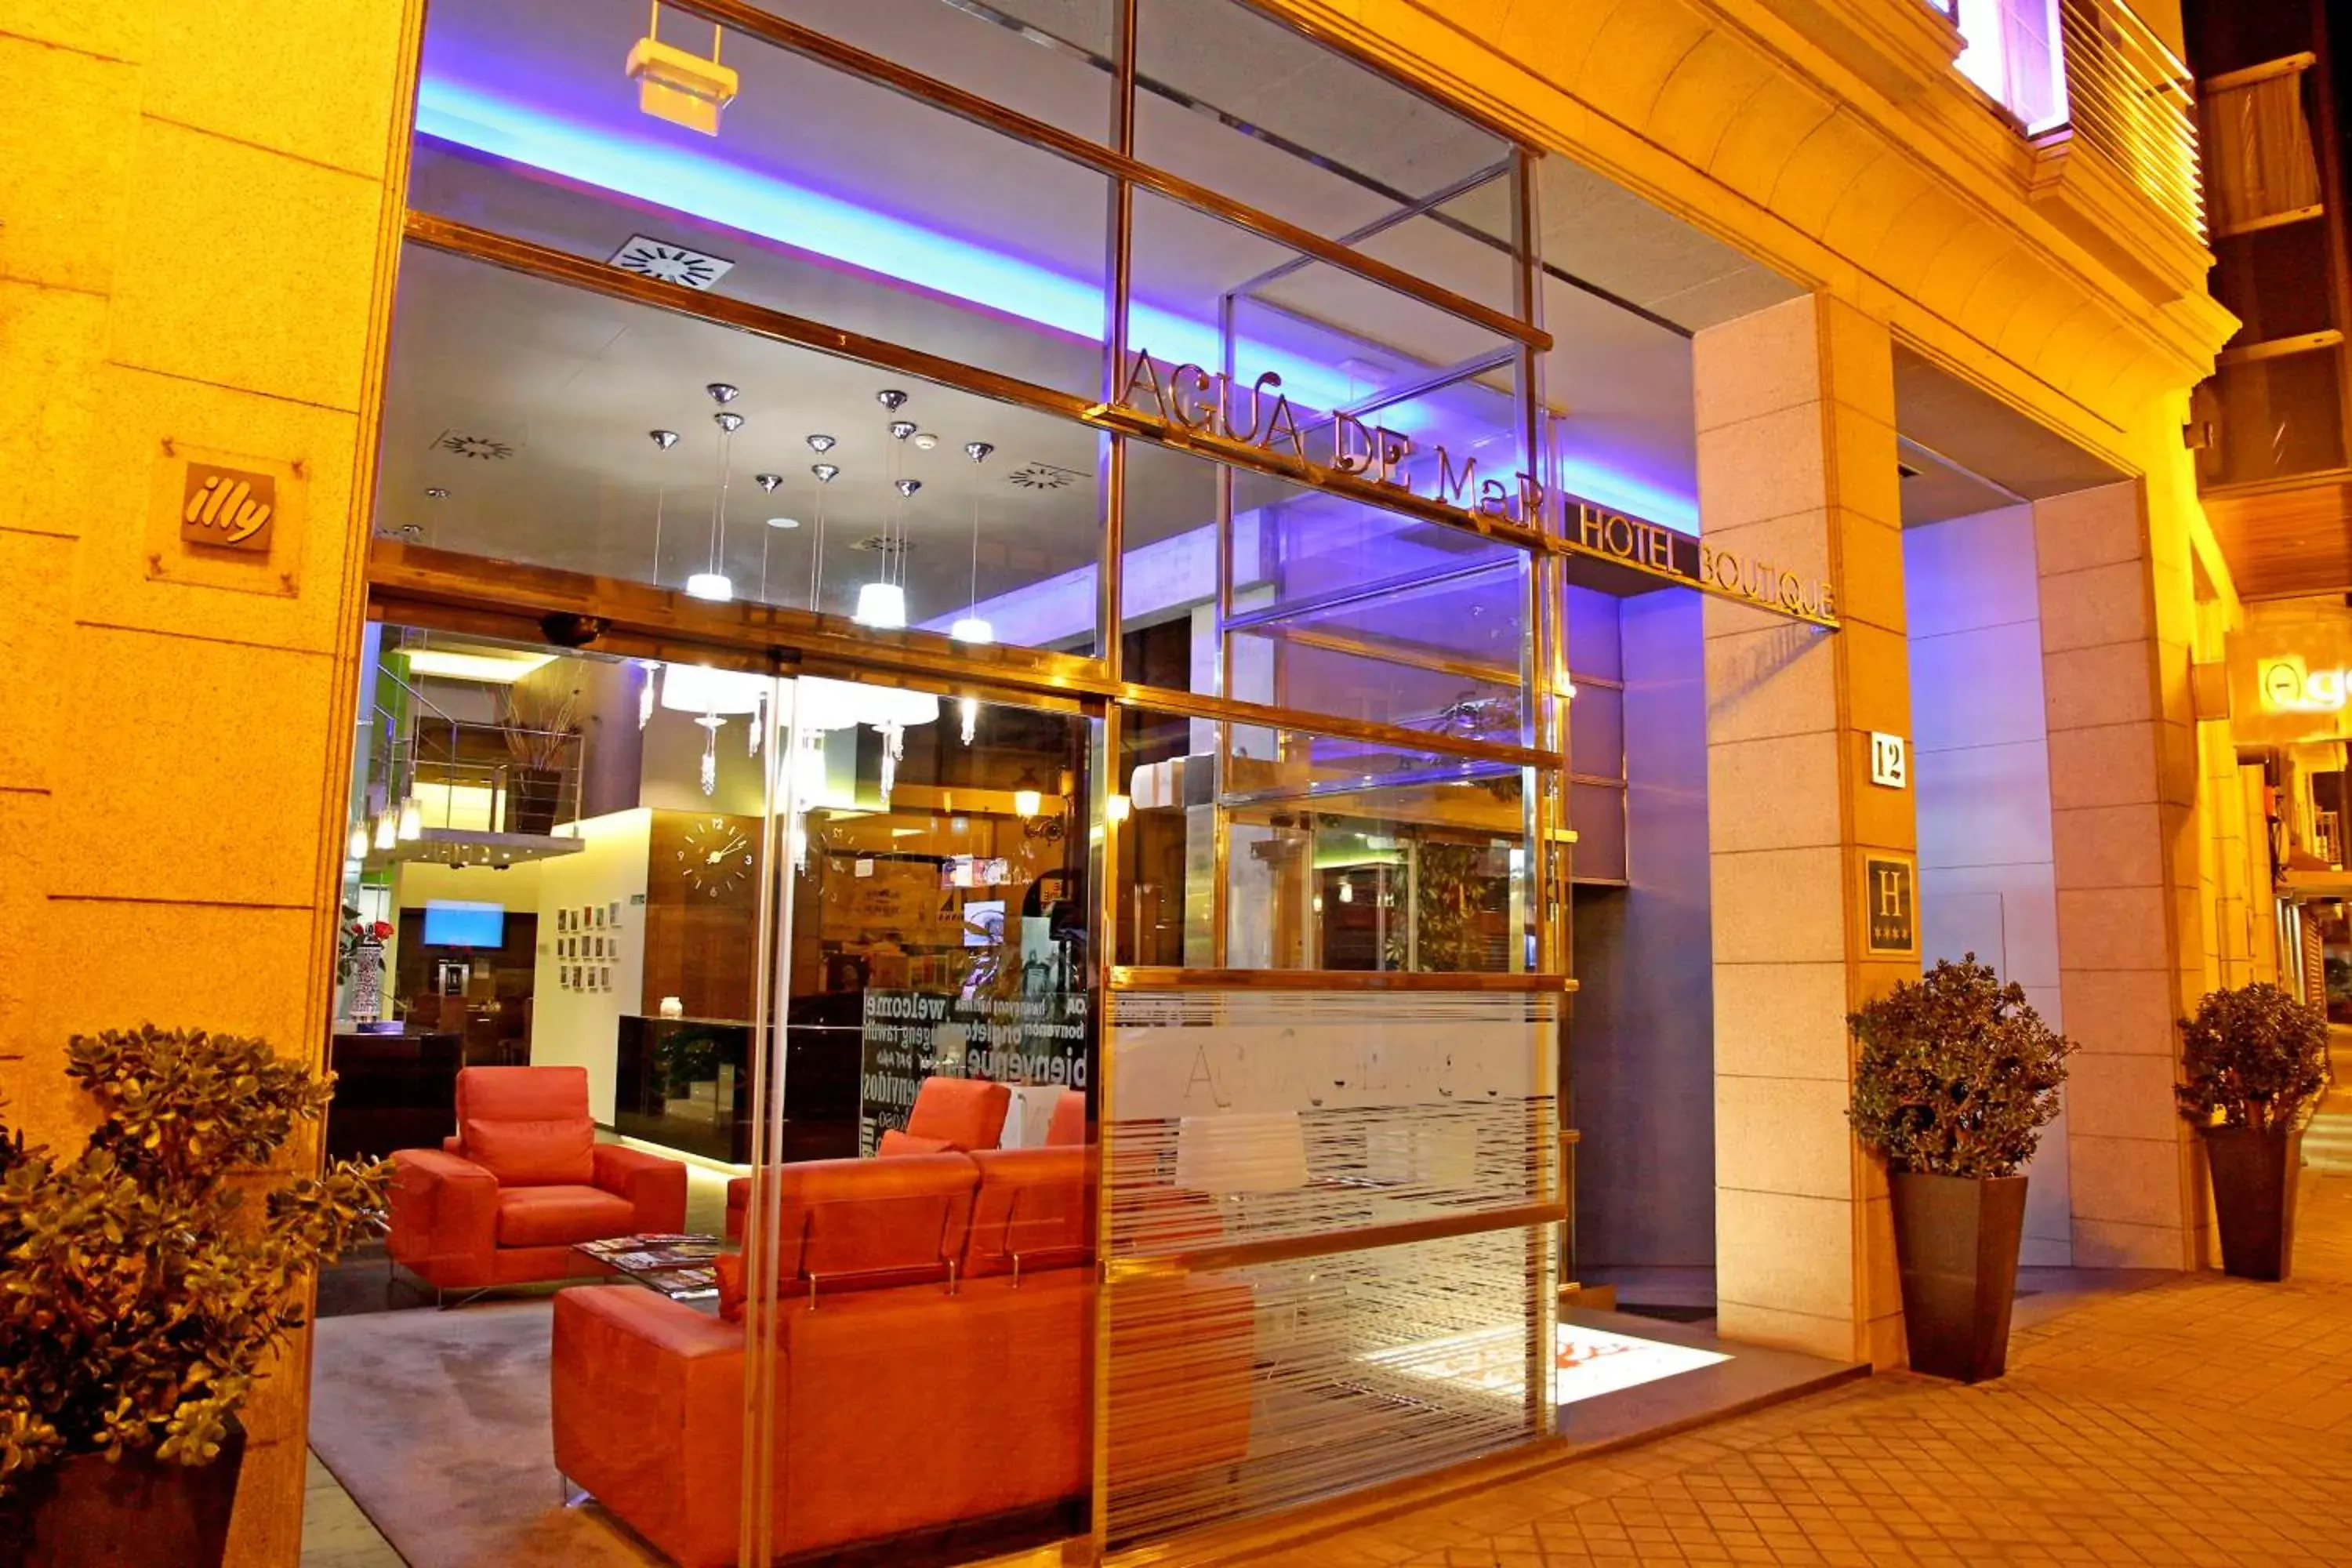 Facade/entrance in Agua de Mar Hotel Boutique